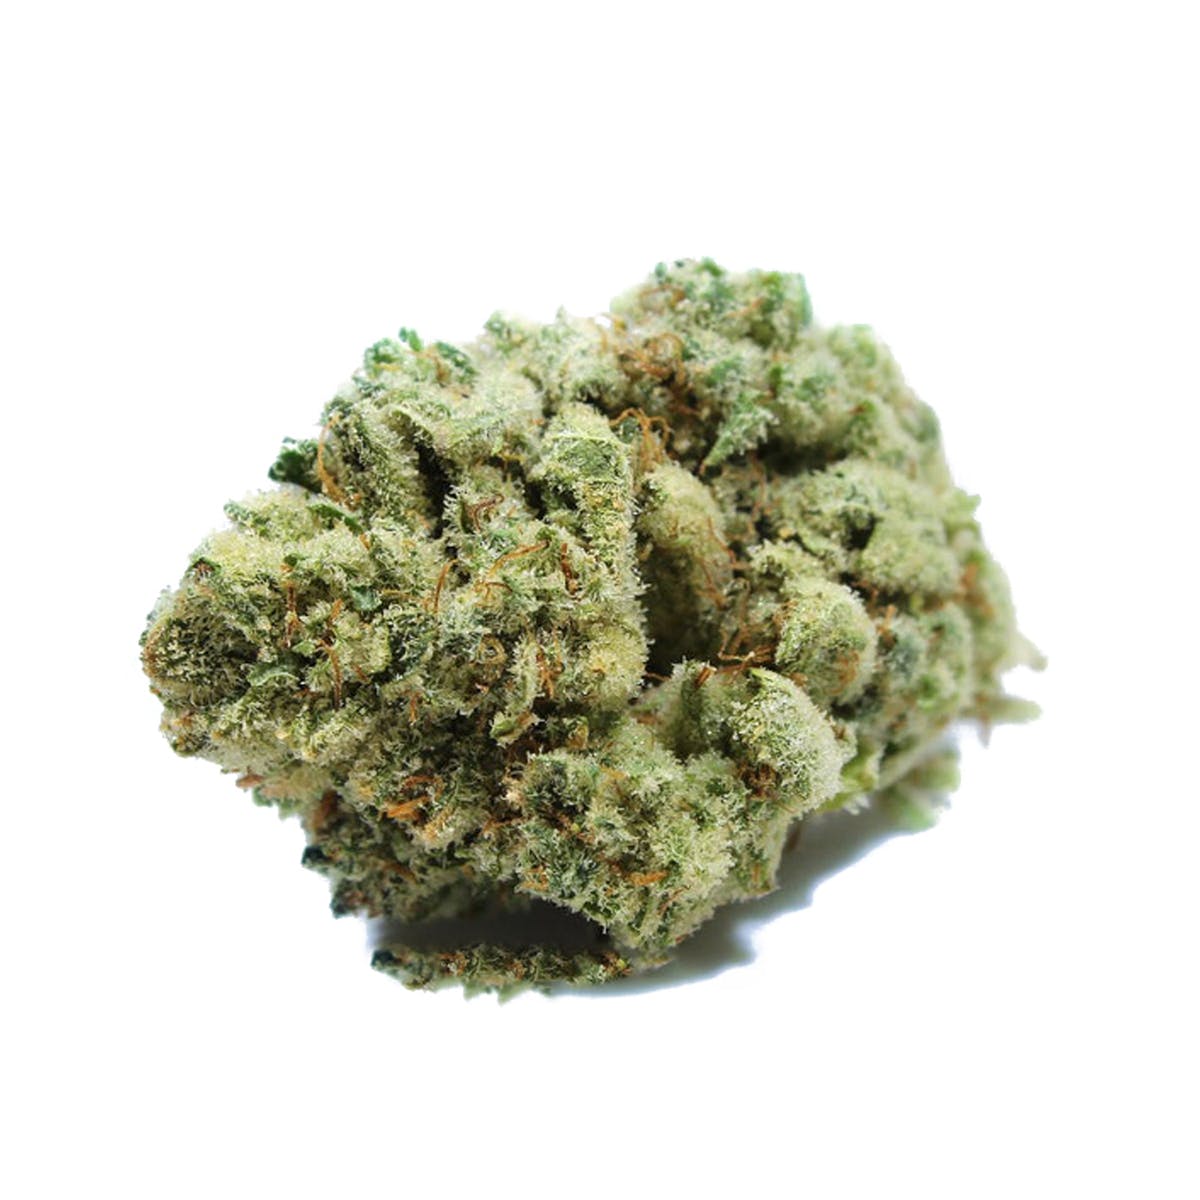 marijuana-dispensaries-3700-w-segerstrom-ave-2c-suite-a-santa-ana-super-glue-fats-glue